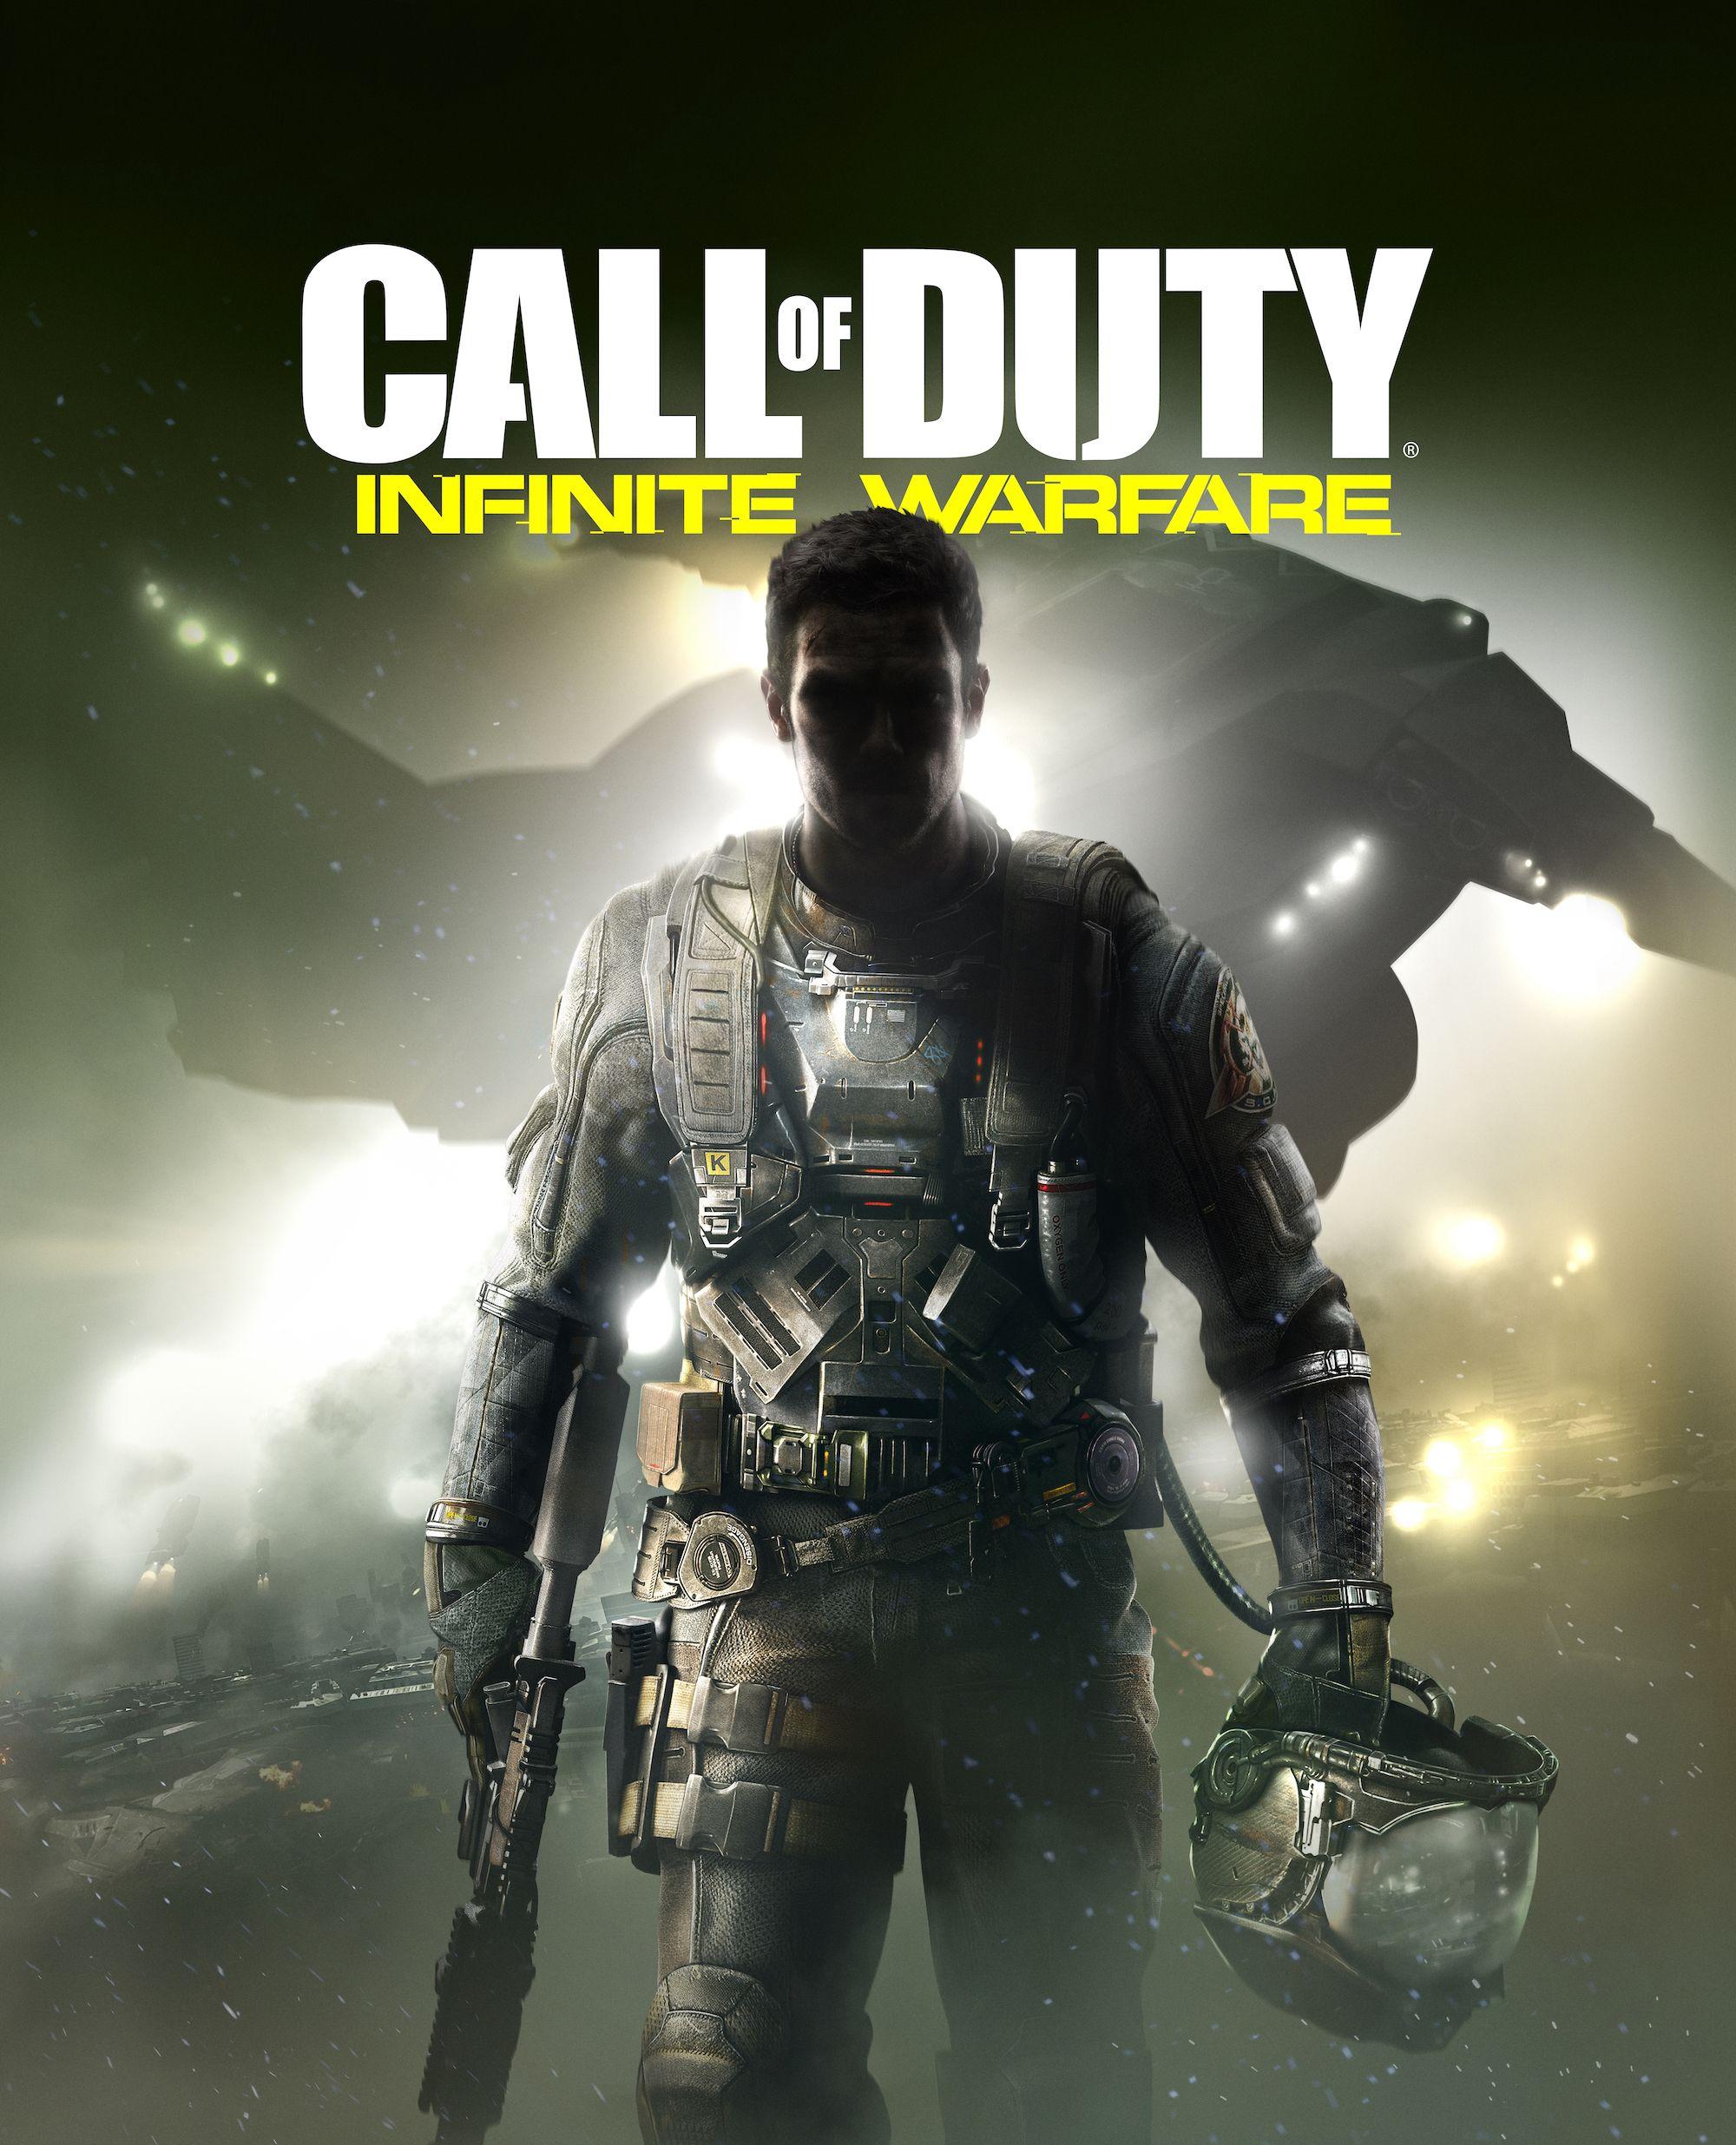 Original game cover art. Call of Duty